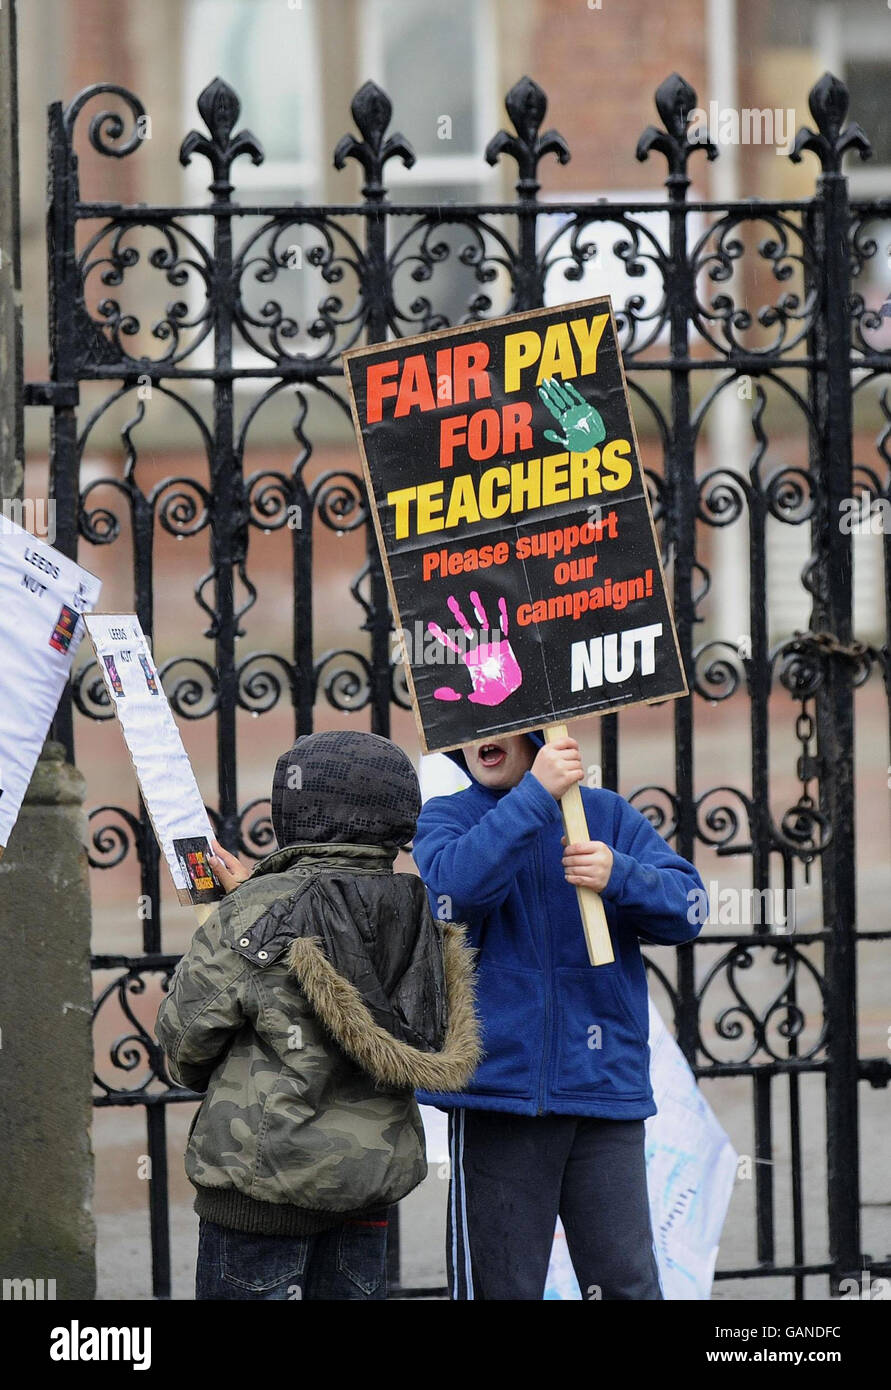 Huelga de profesores. Jóvenes partidarios que sostienen pancartas apoyan la huelga de la Unión Nacional de Maestros, fuera de una escuela en Leeds. Foto de stock